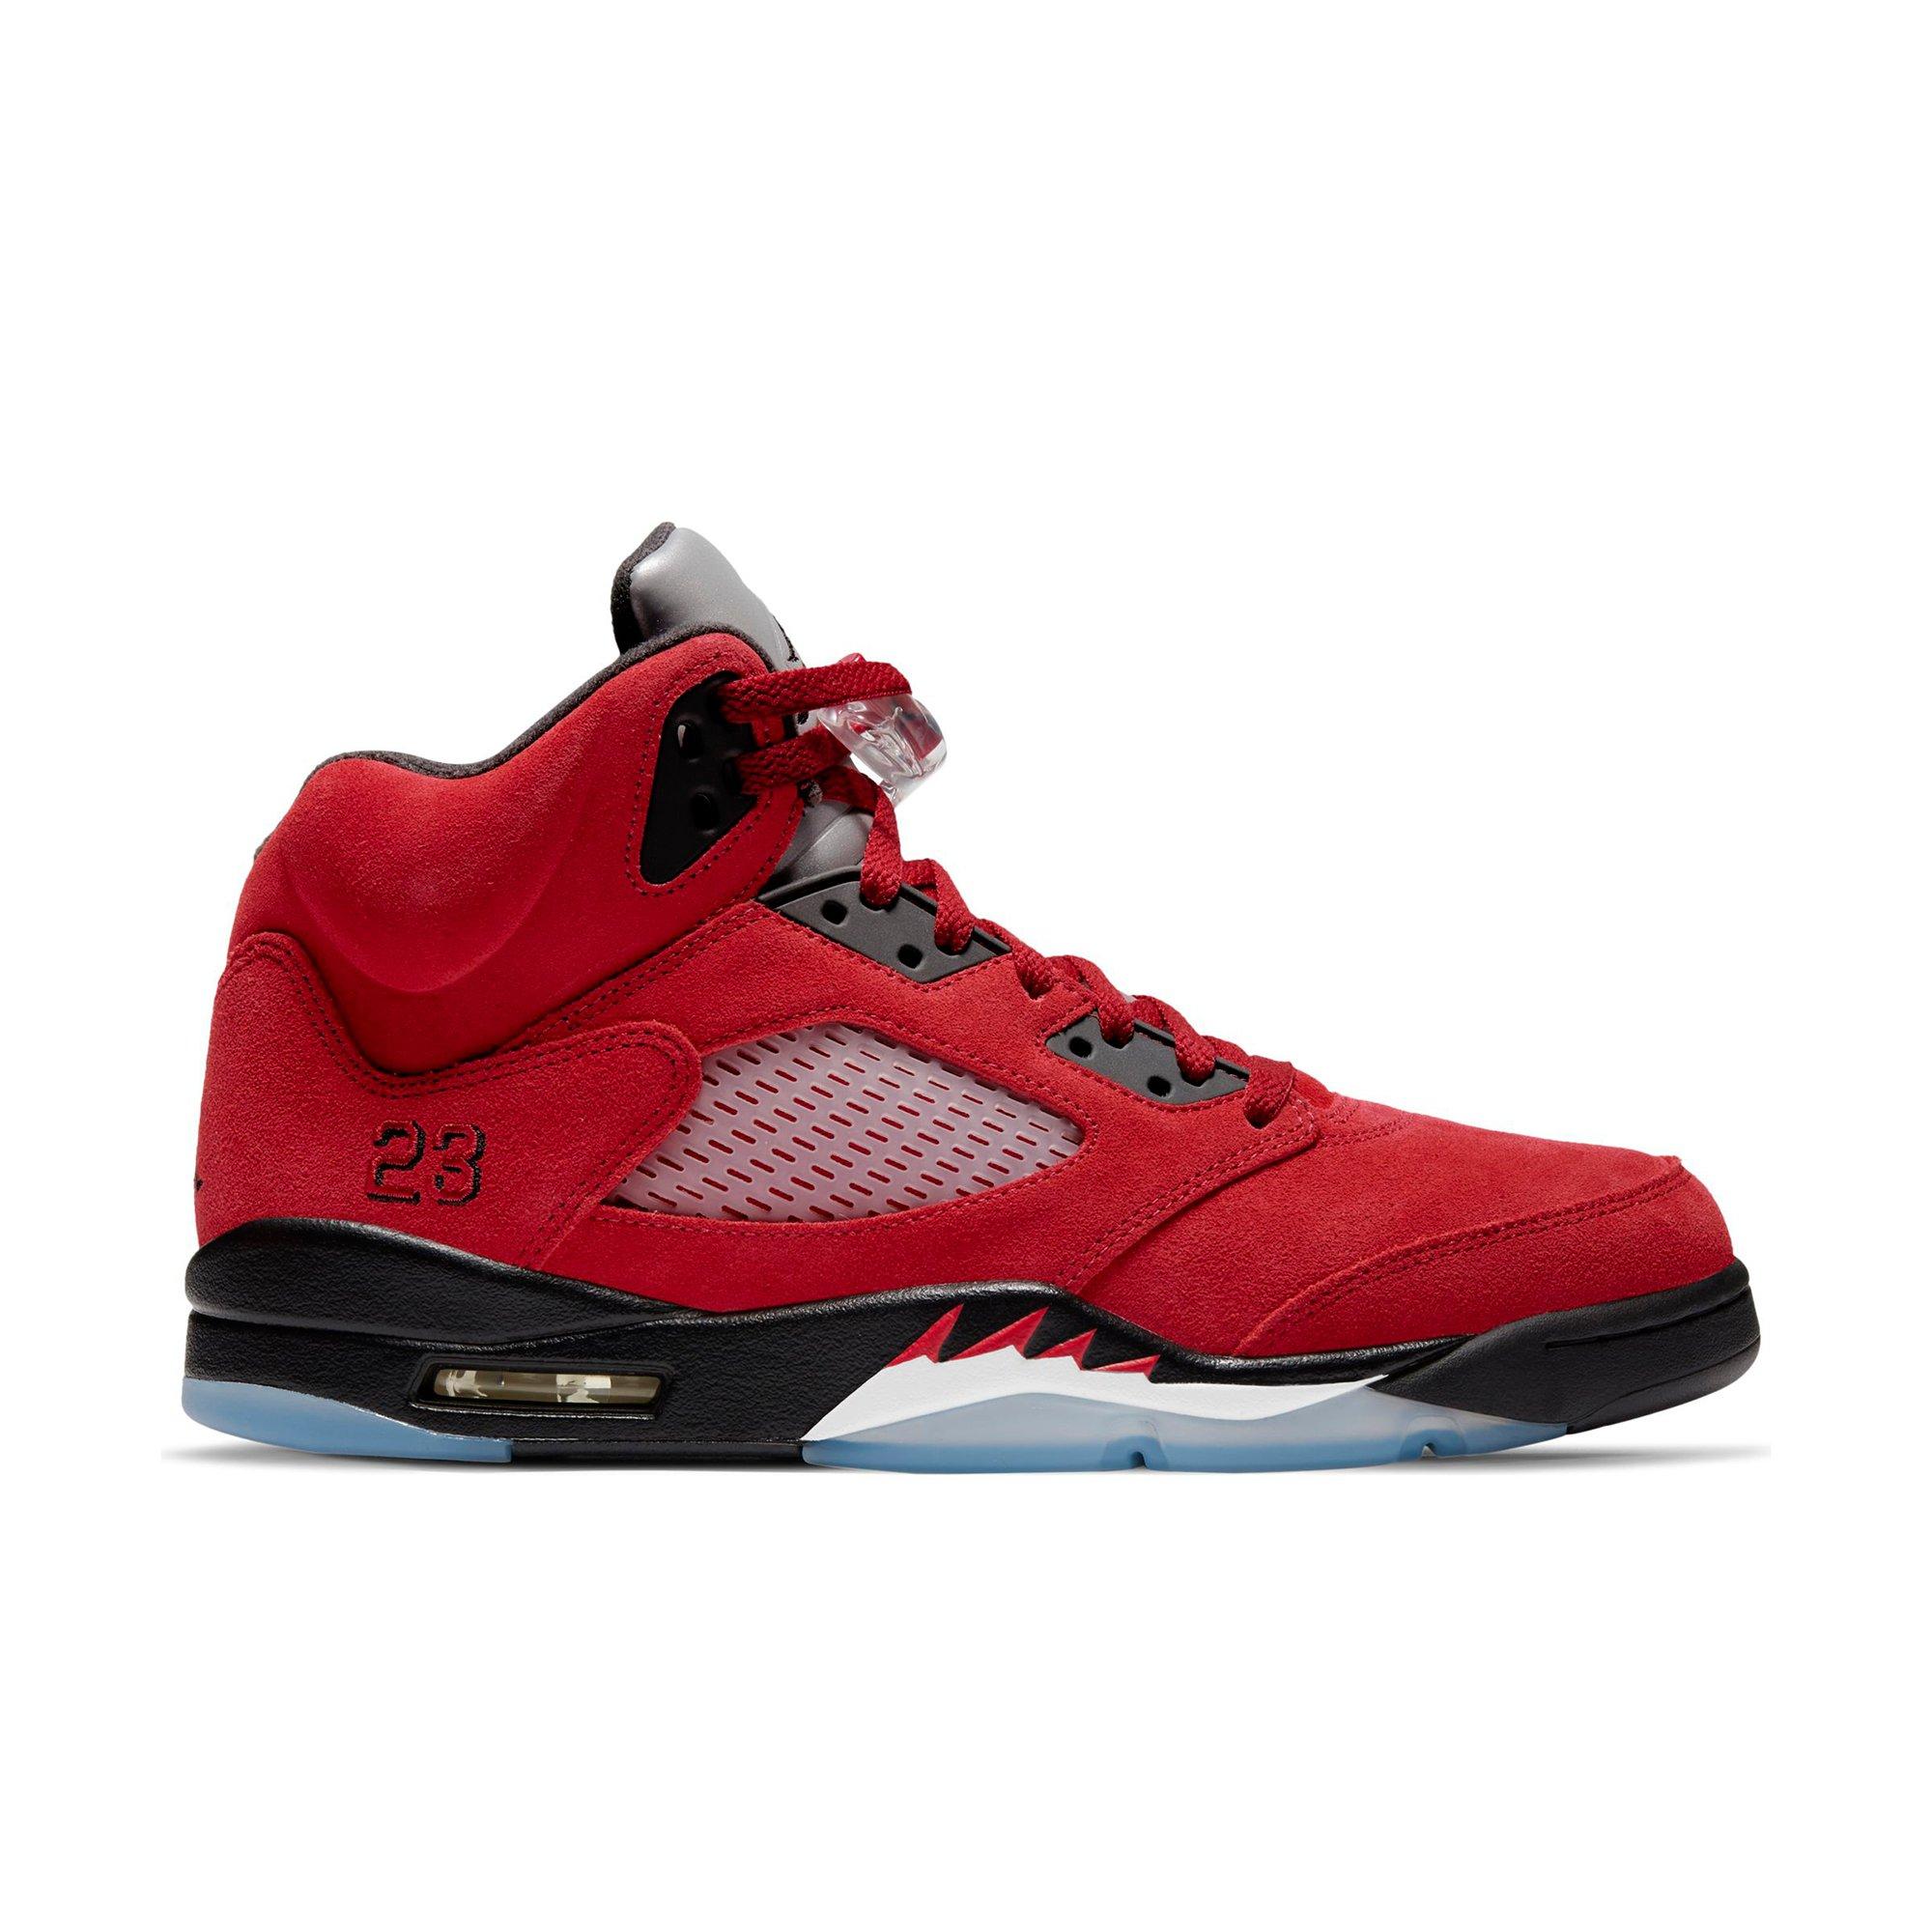 Air Jordan 5 Retro “Grape”